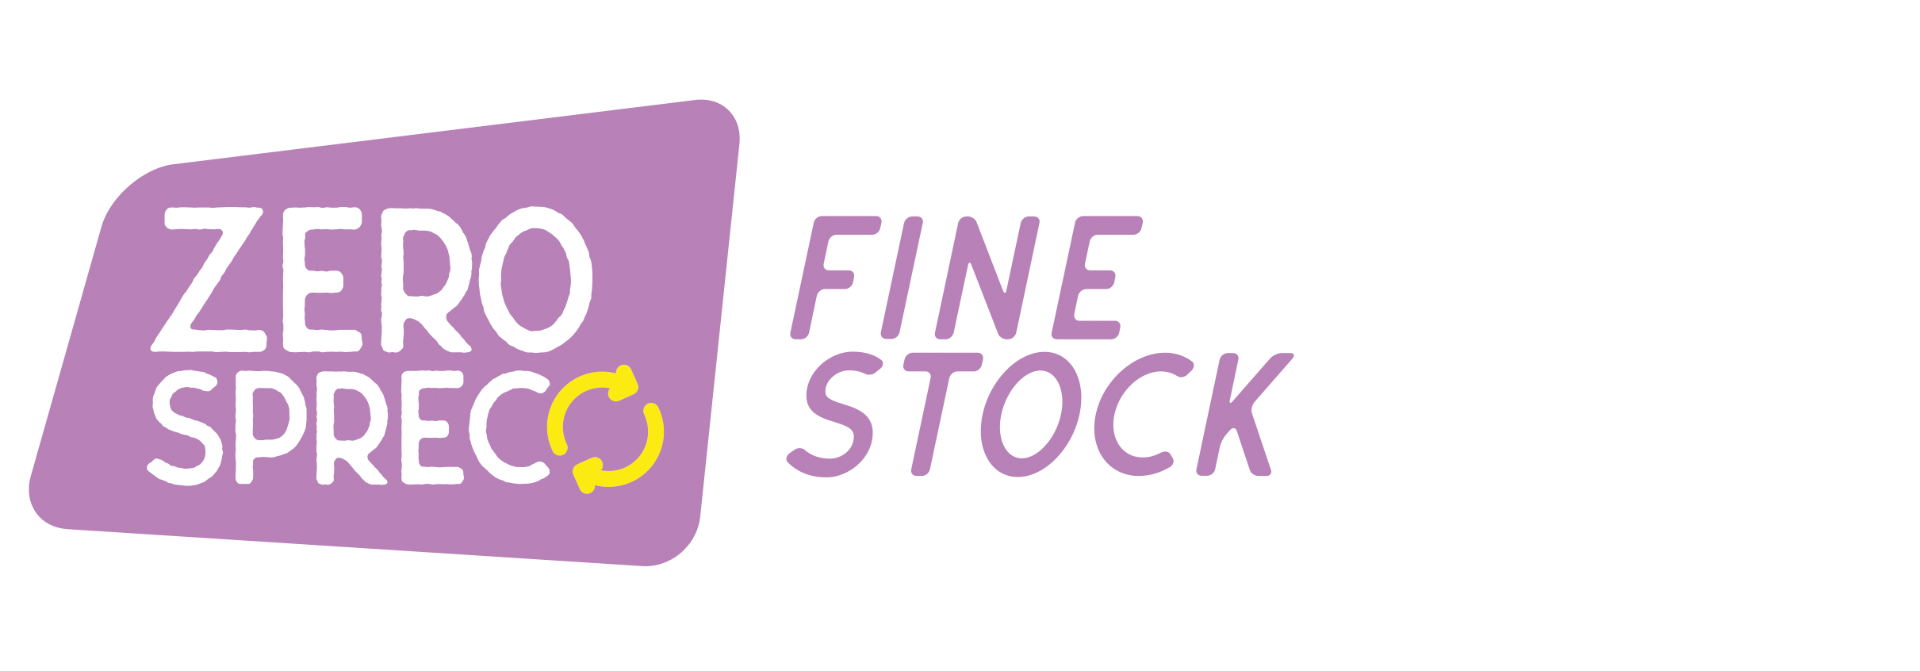 zero spreco fine stock